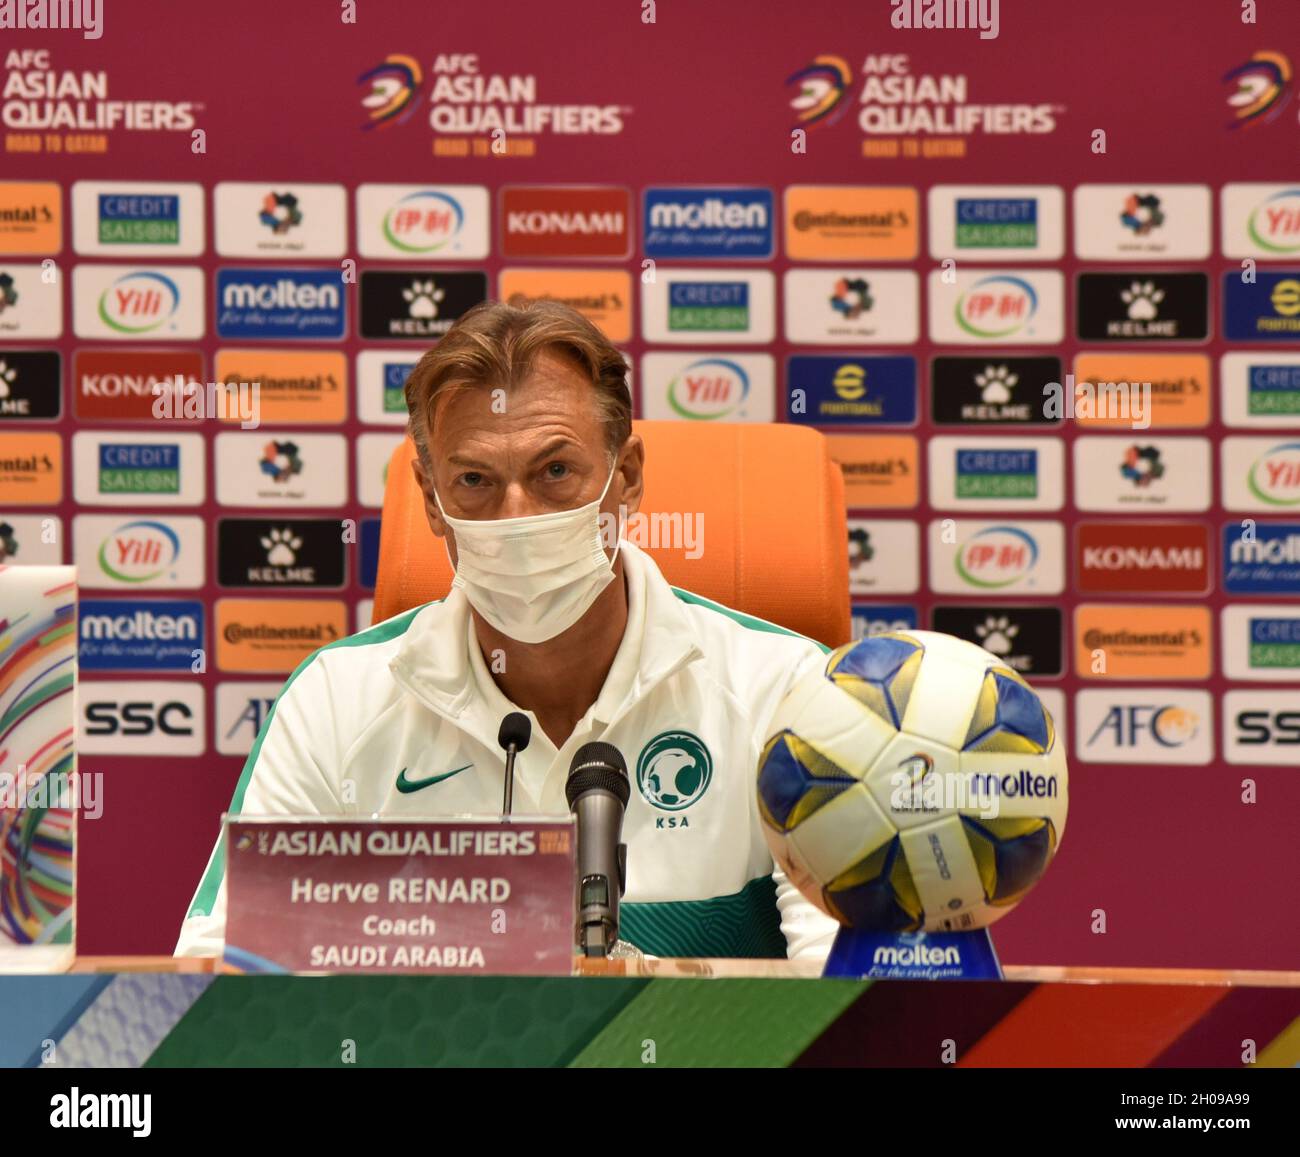 Saudi Arabia Coach Herve Renard During Editorial Stock Photo - Stock Image